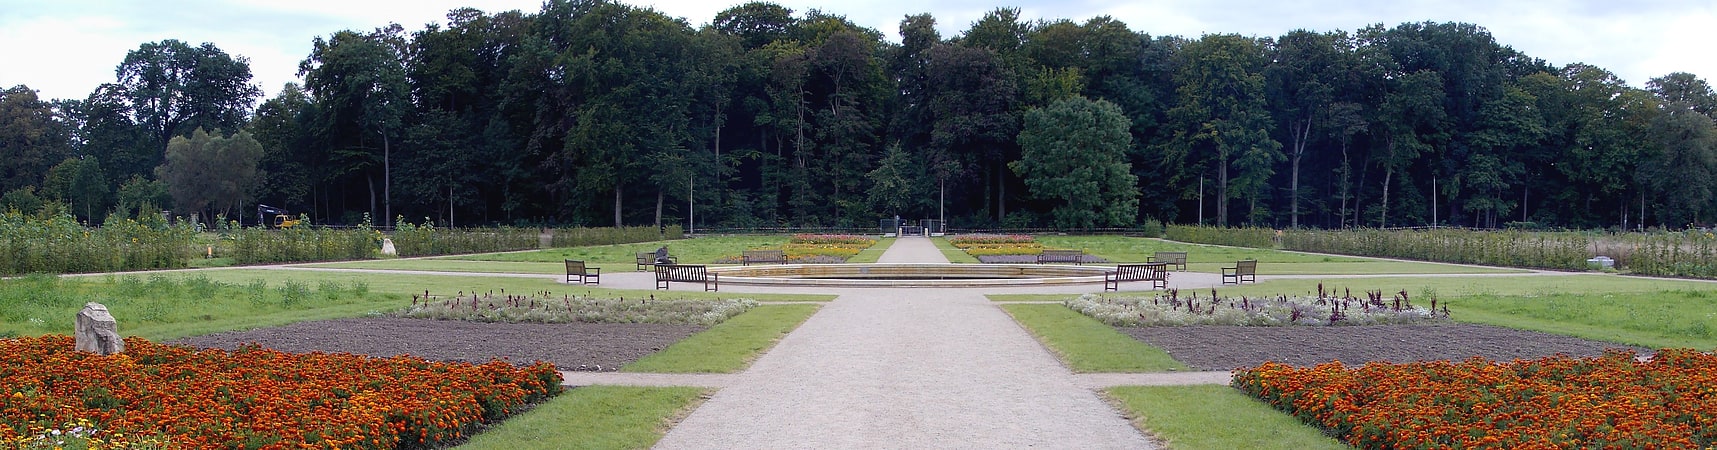 Park in Quedlinburg, Sachsen-Anhalt